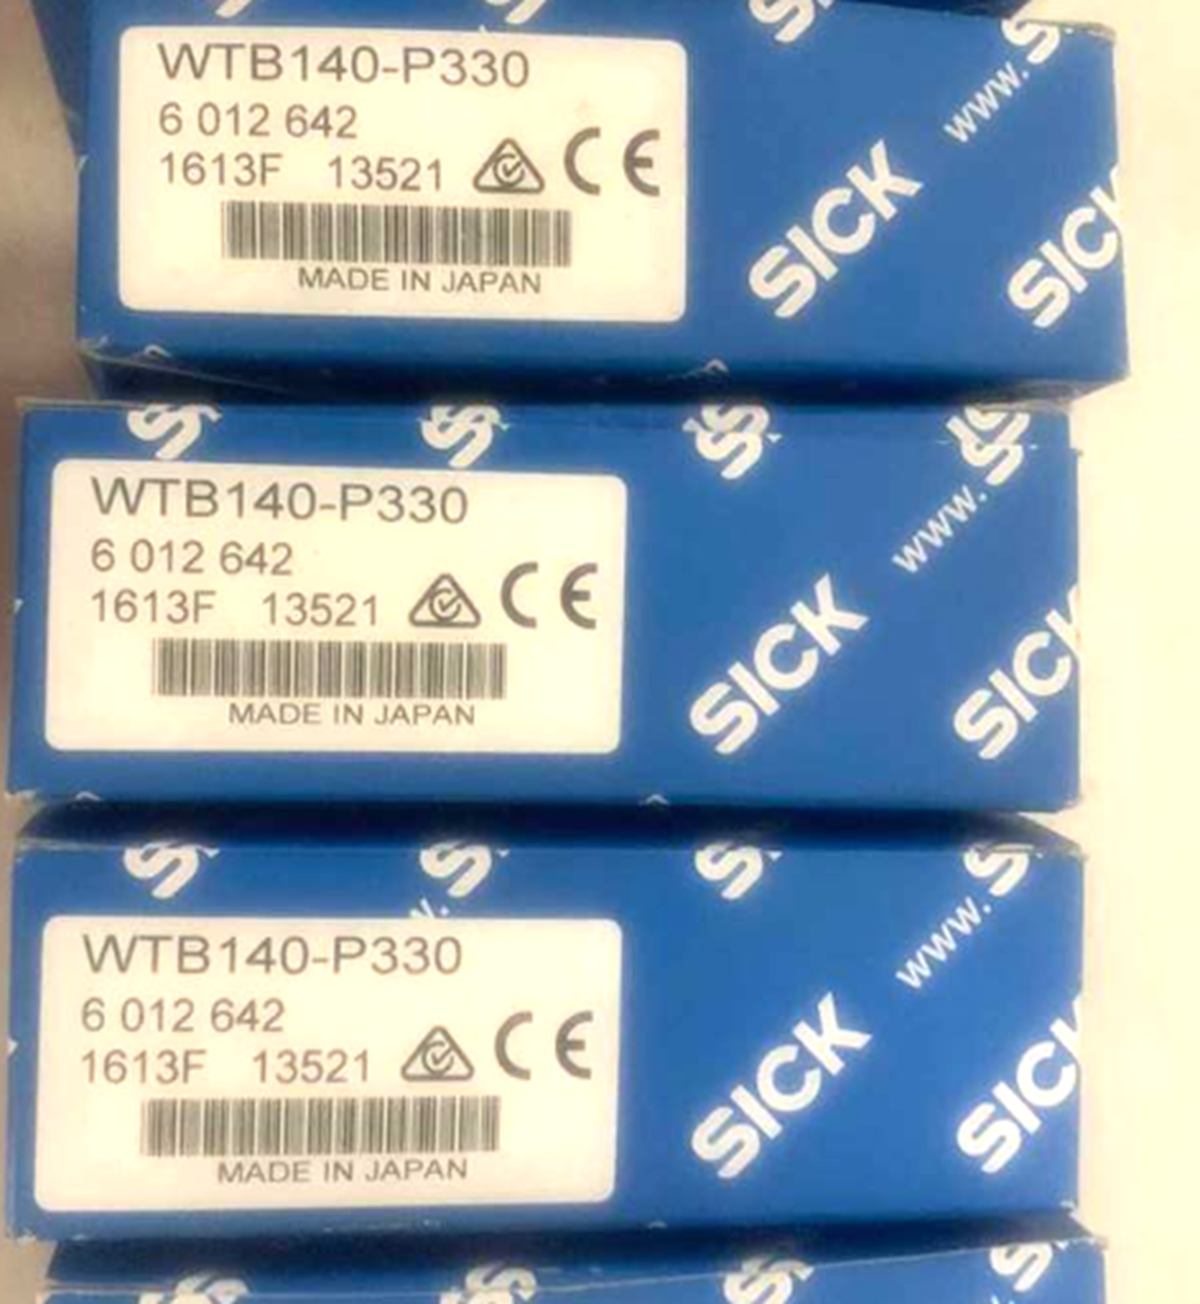 SICK WTB140-P330 Proximity Sensor